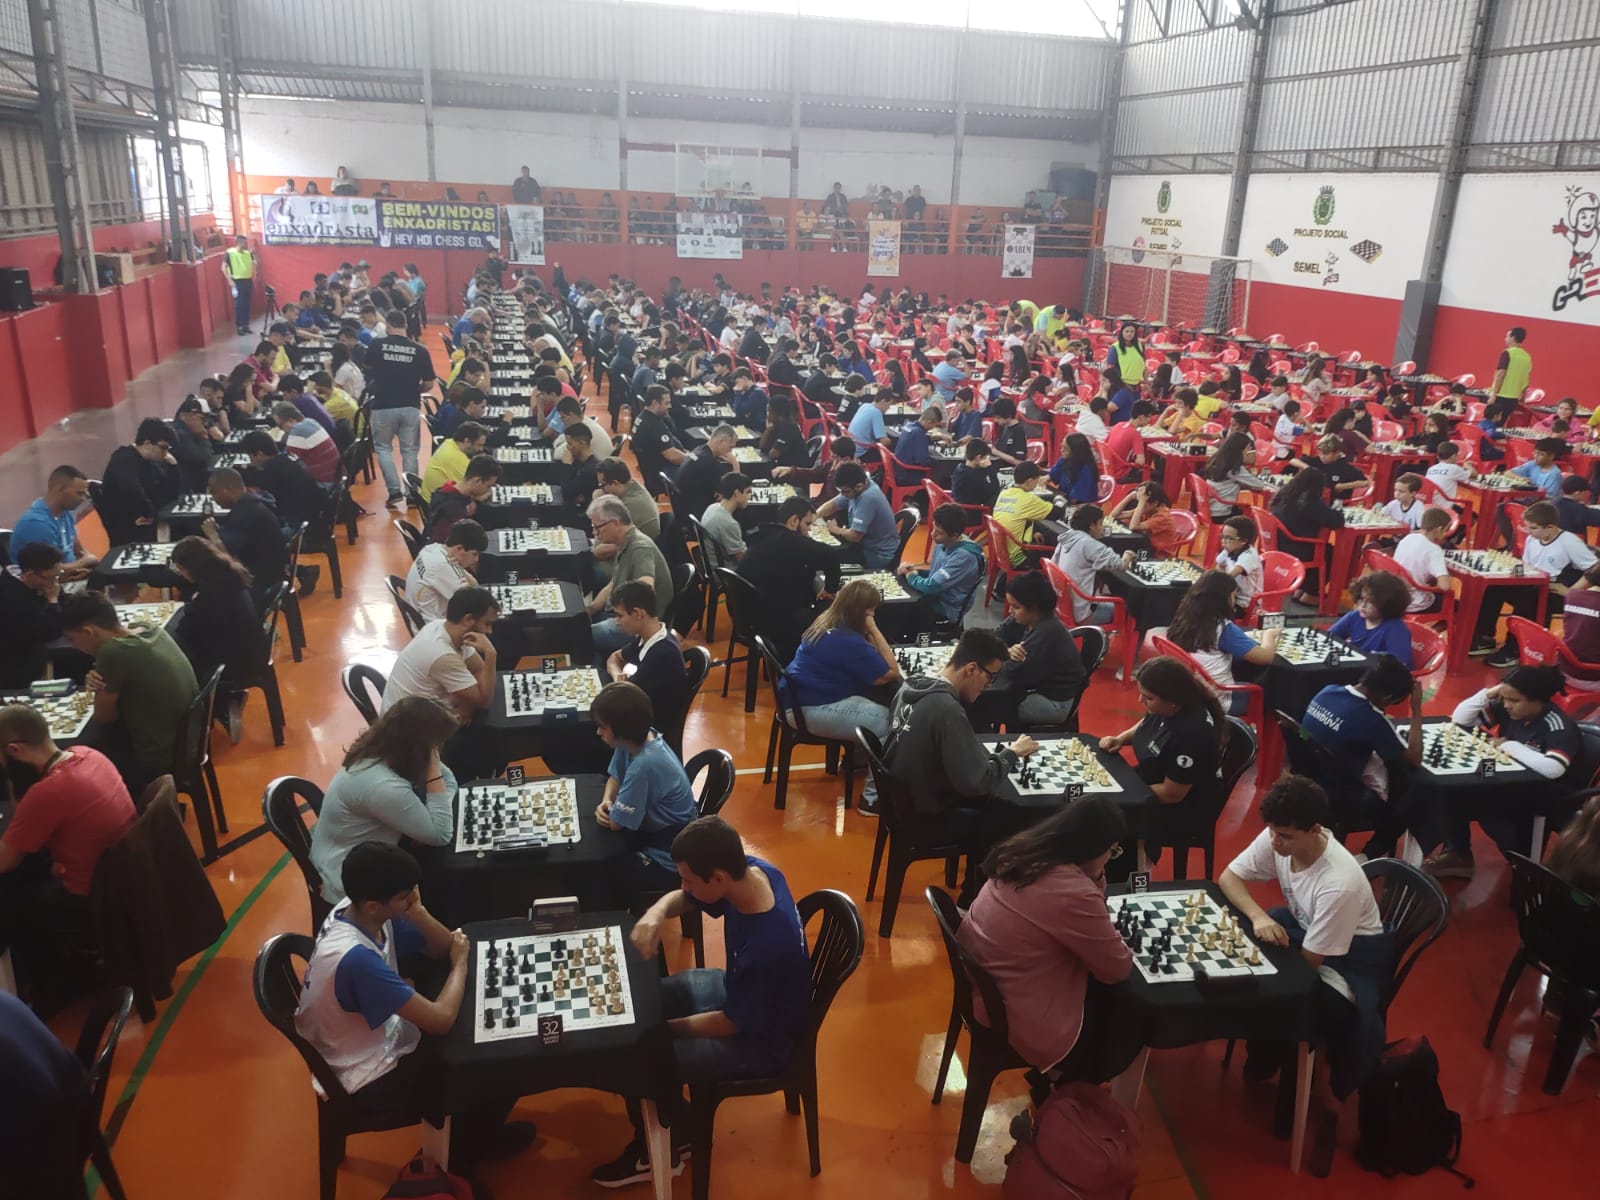 Xadrez Bauru participa de campeonato em São Pedro do Turvo - 96FM Bauru